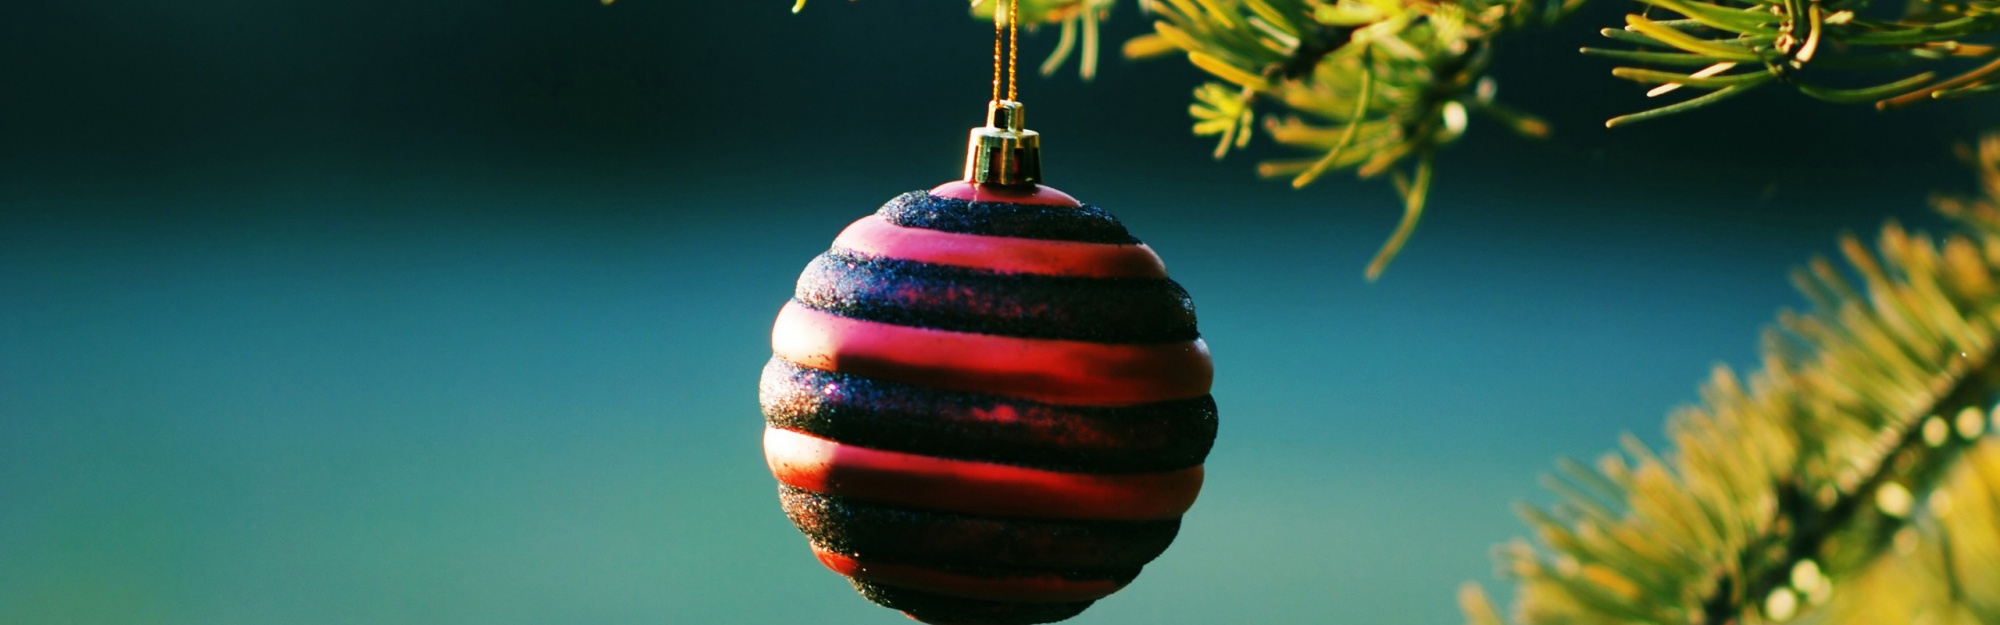 Christmas Balls On Pine Tree